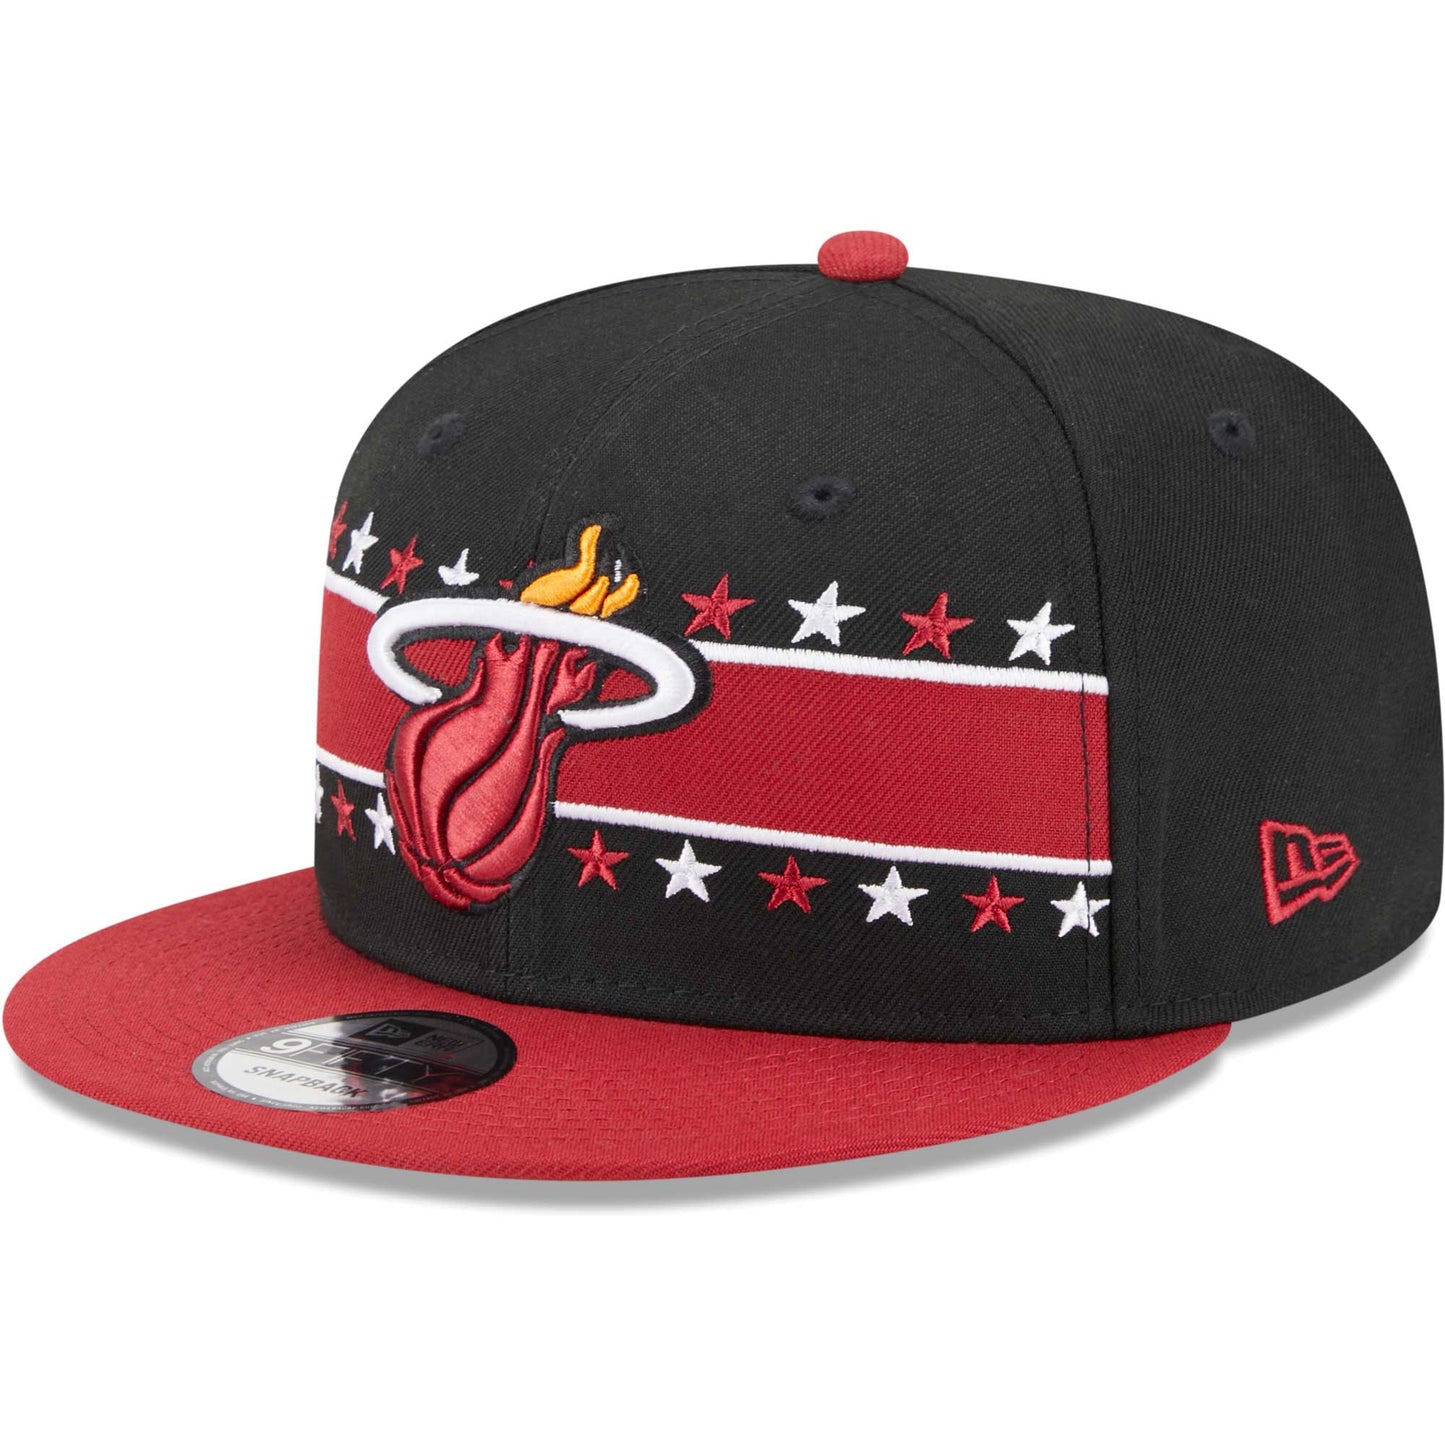 Miami Heat New Era Banded Stars 9FIFTY Snapback Hat - Black